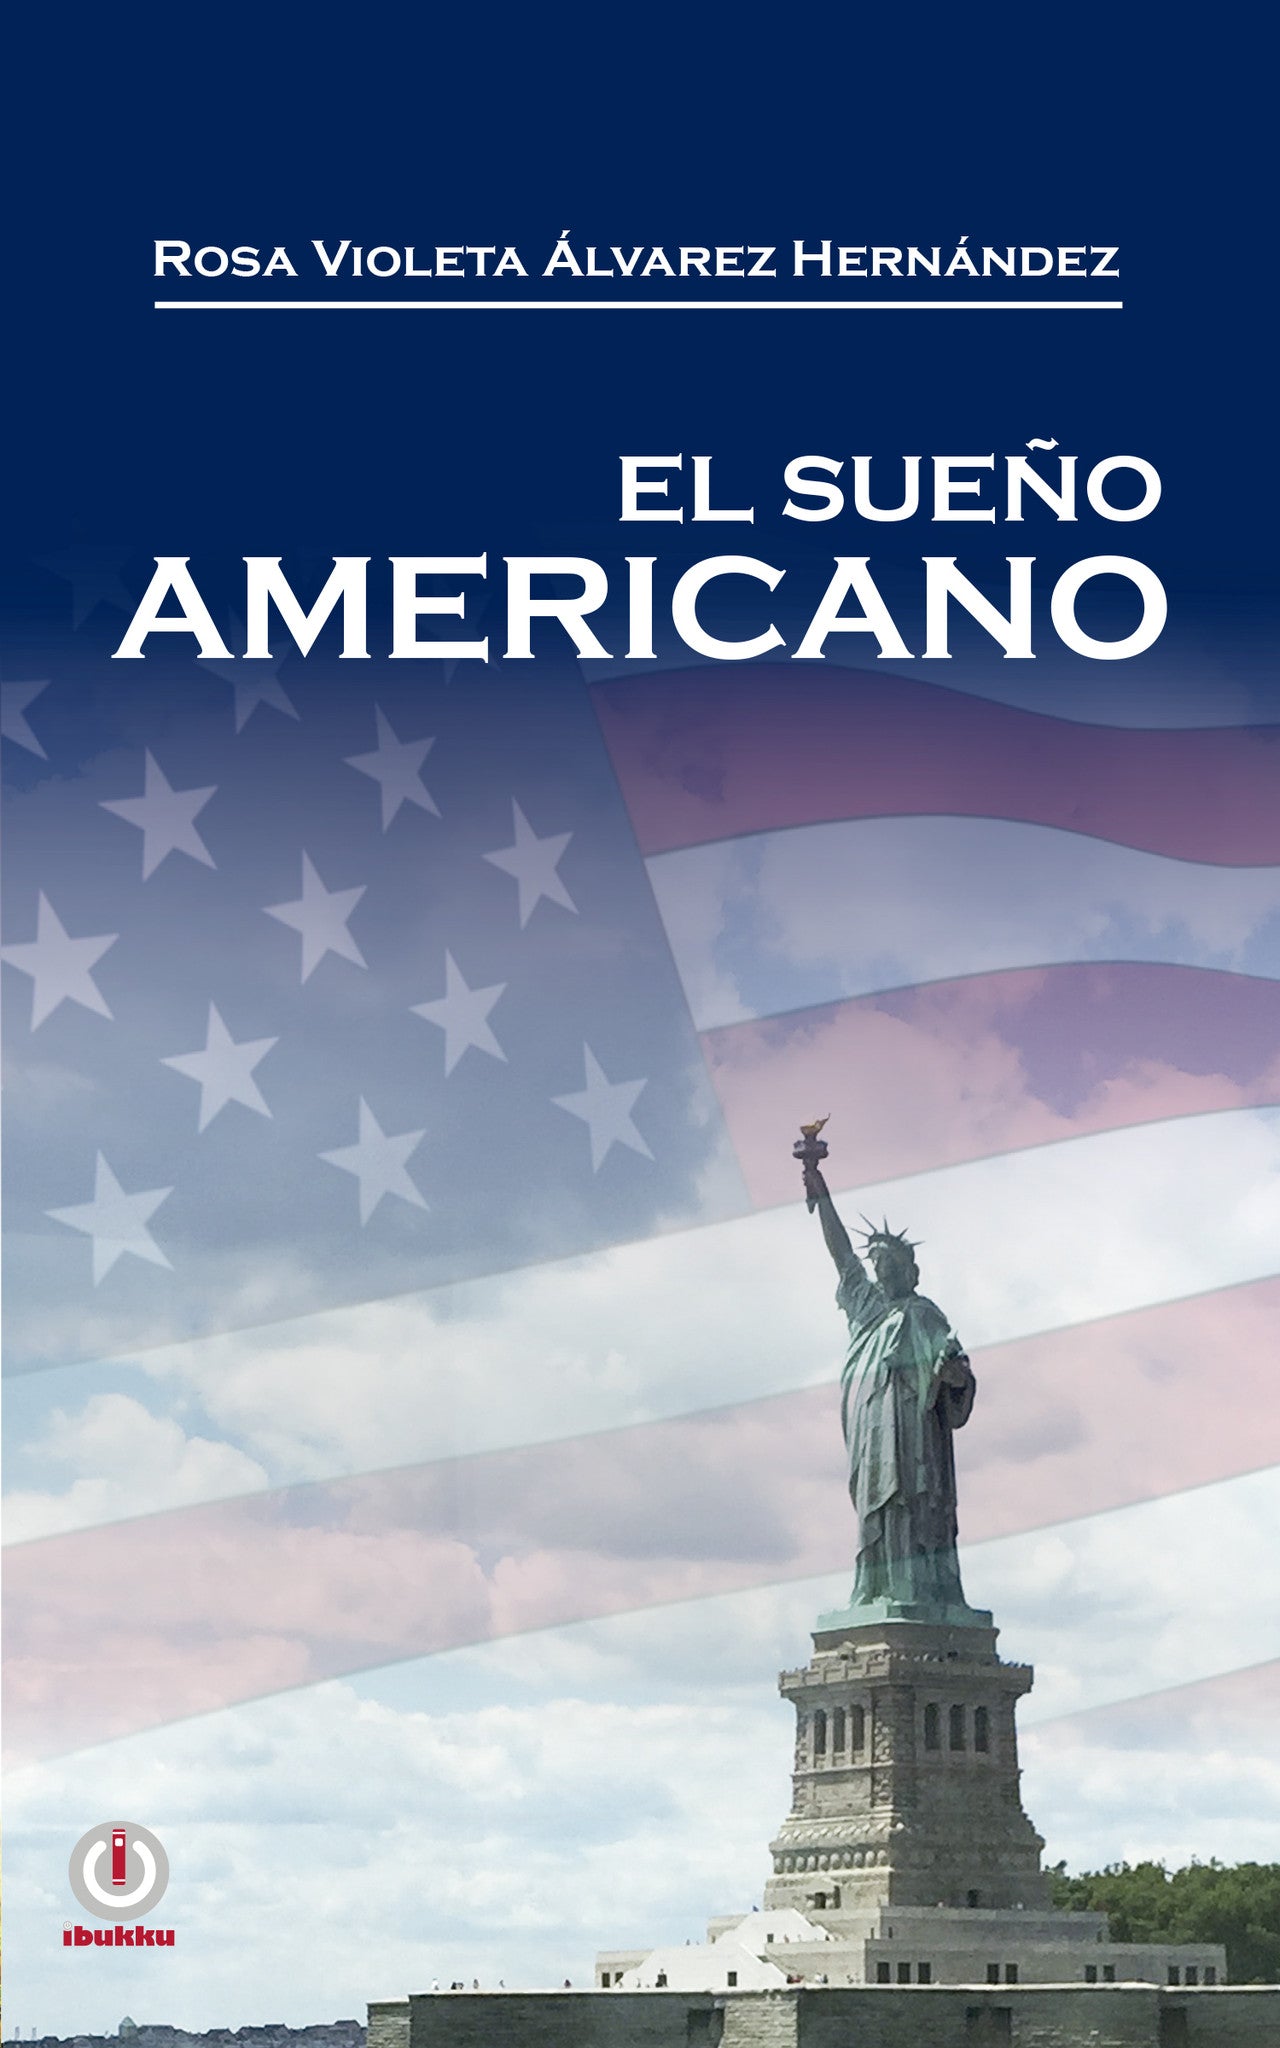 El Sueño Americano - ibukku, LLC